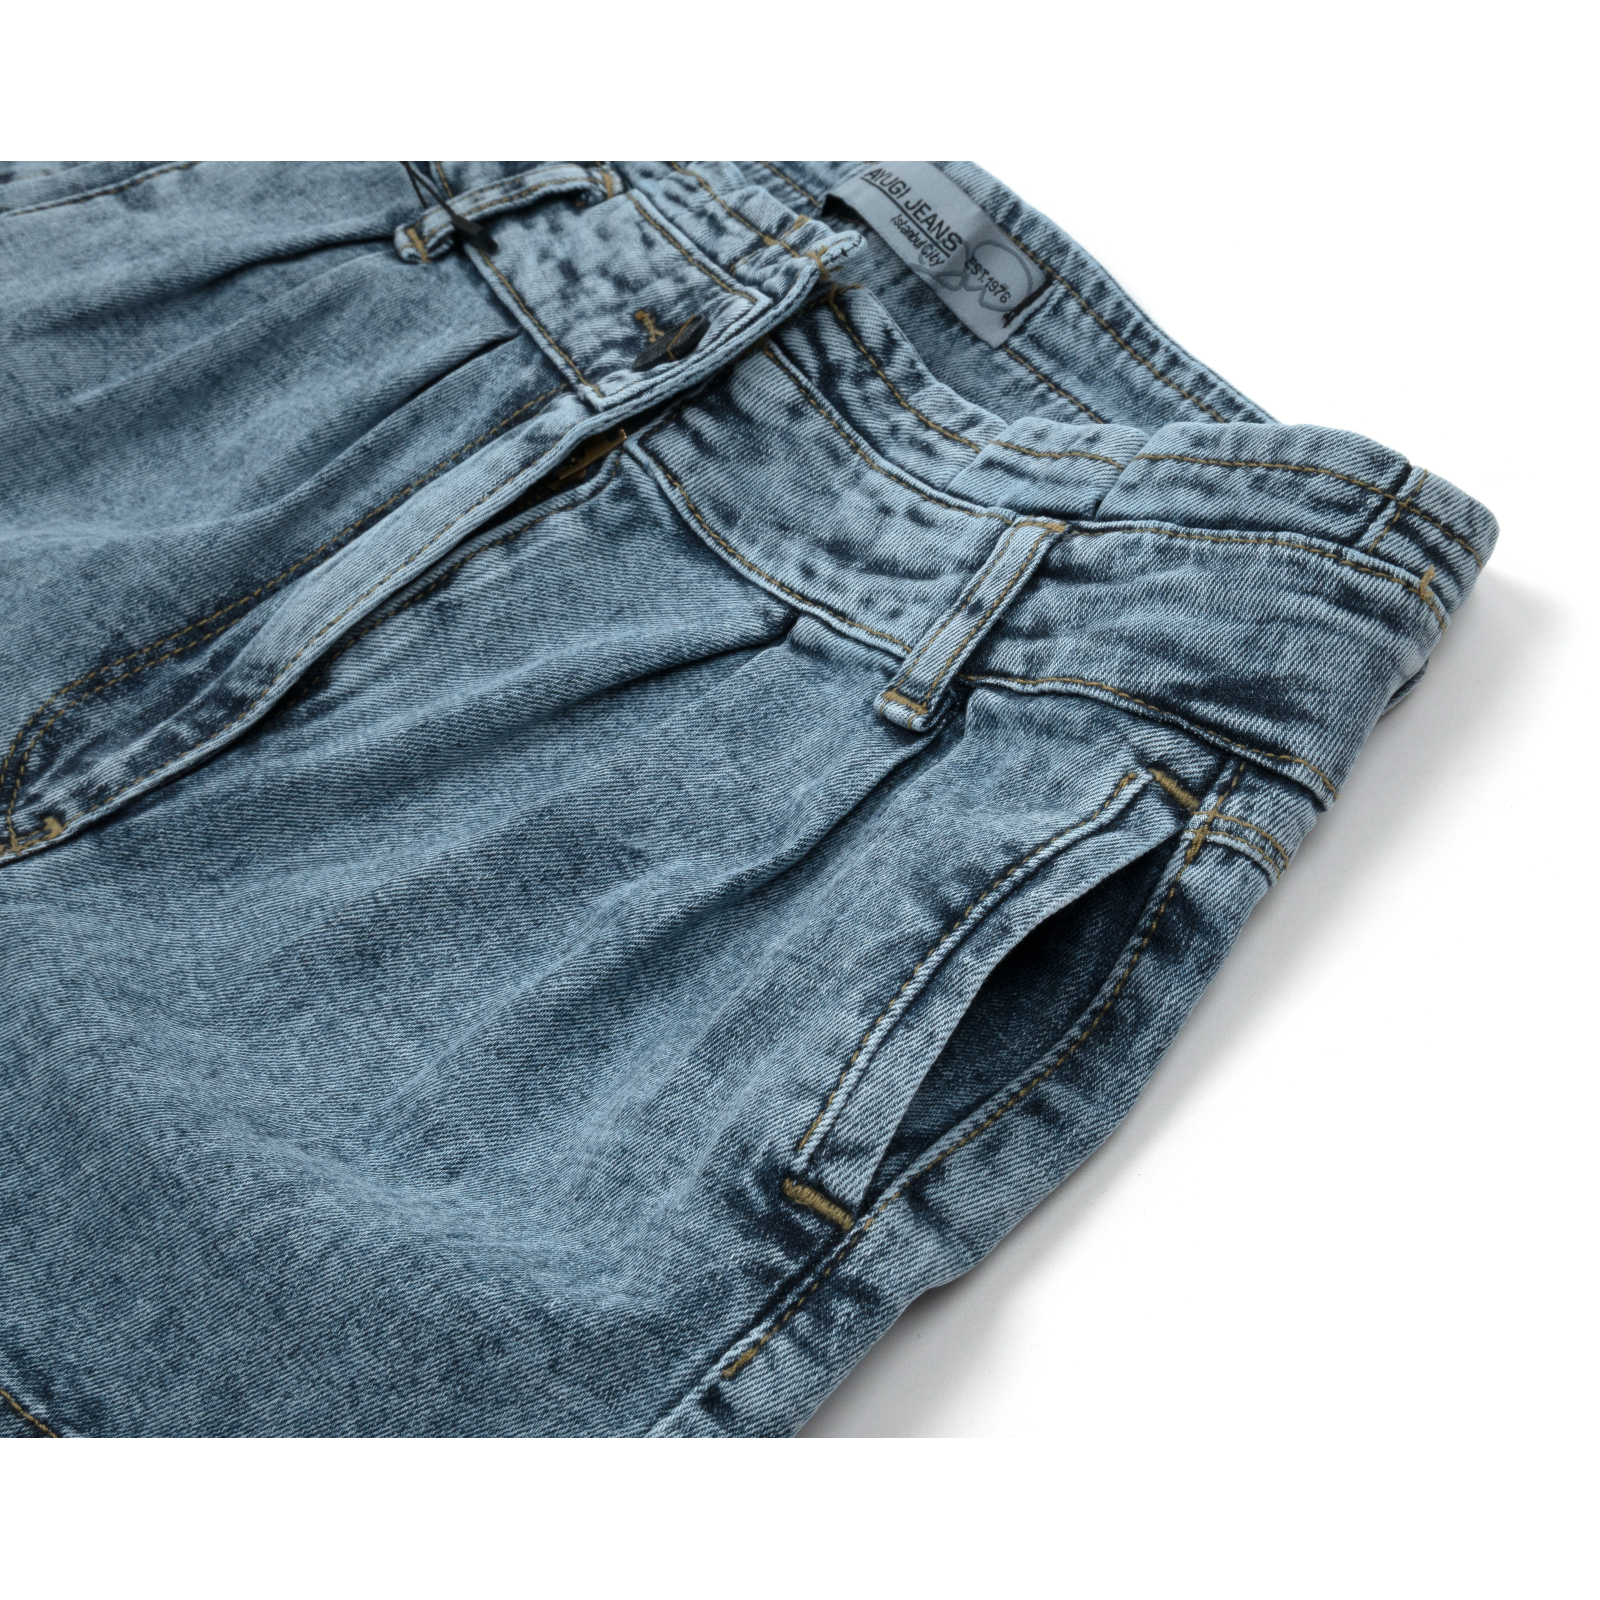 Шорты A-Yugi джинсовые (9225-164G-blue) изображение 3